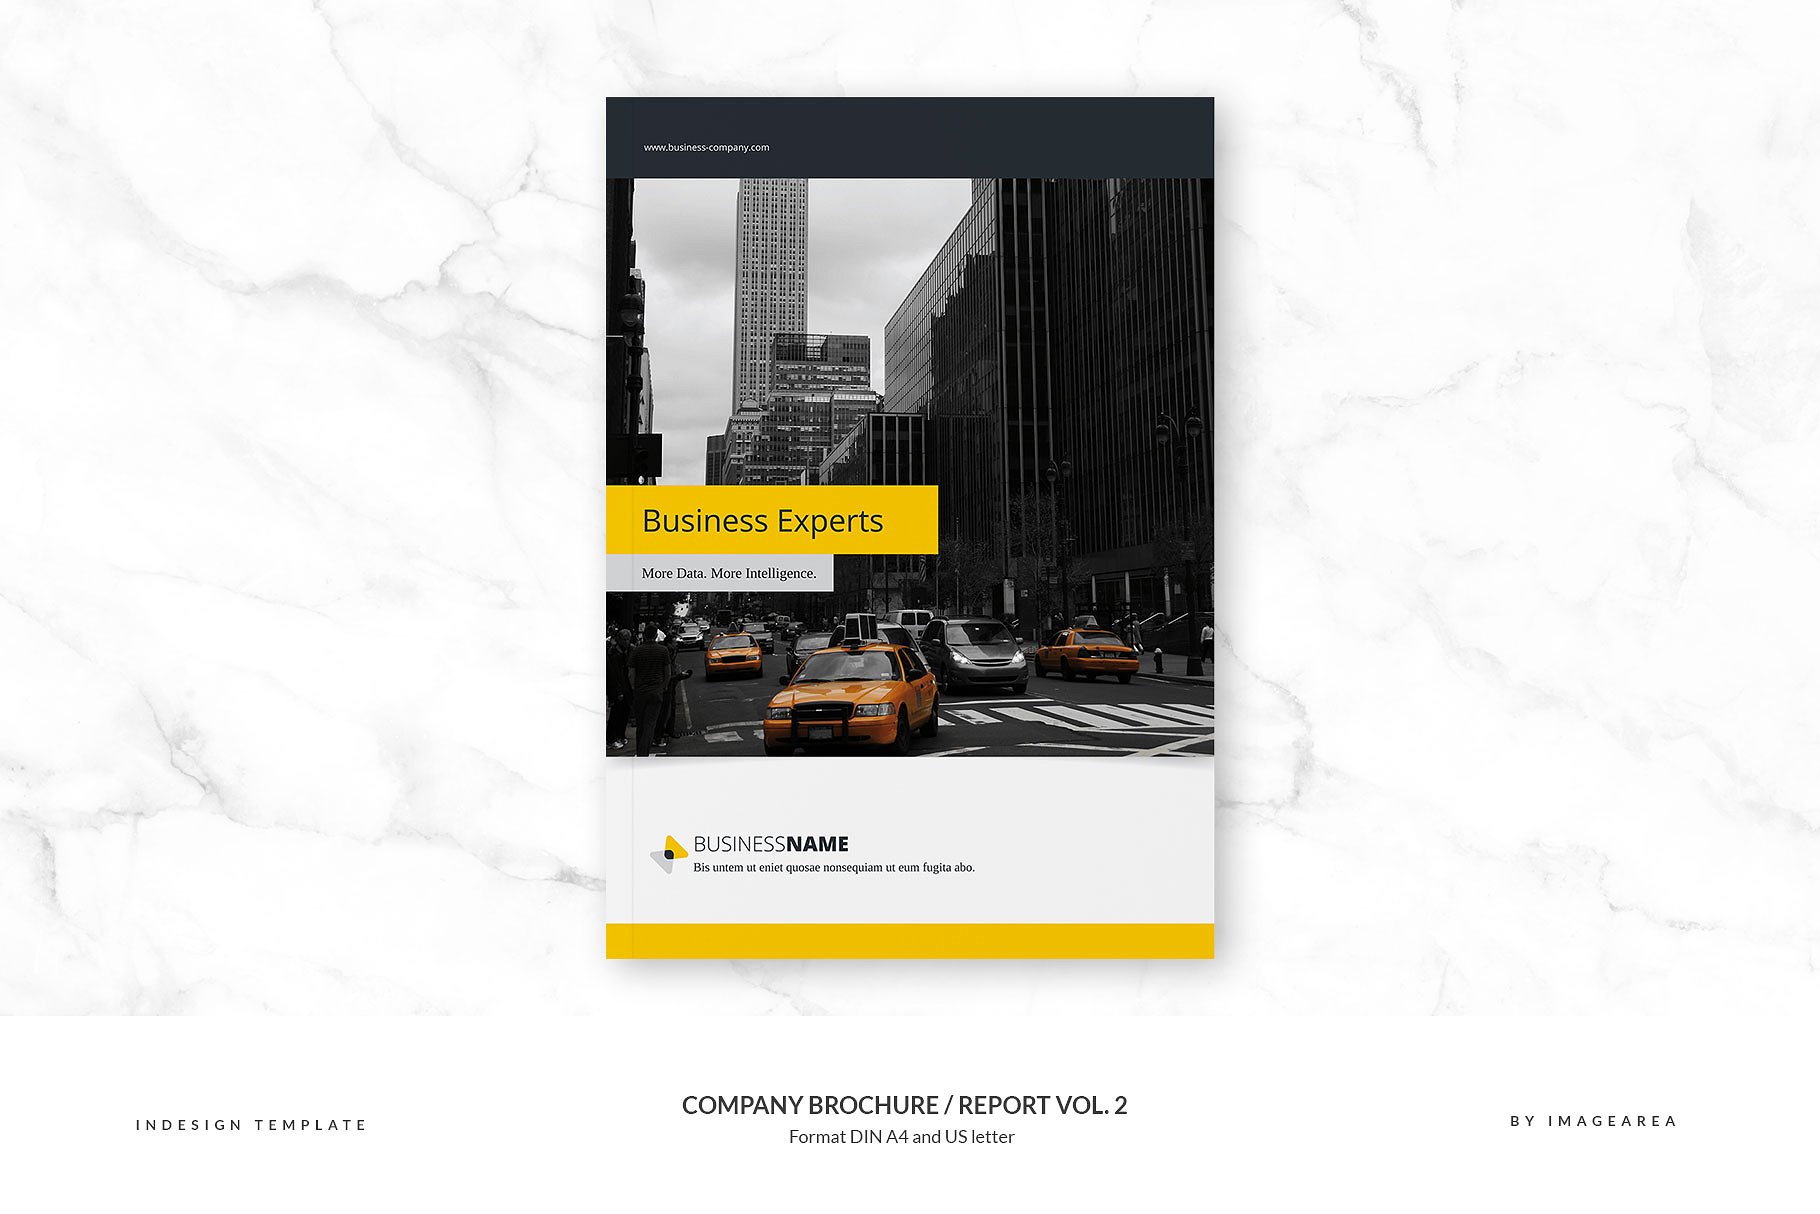 企业品牌宣传画册/企业年报设计模板v2 Company Brochure / Report Vol. 2插图